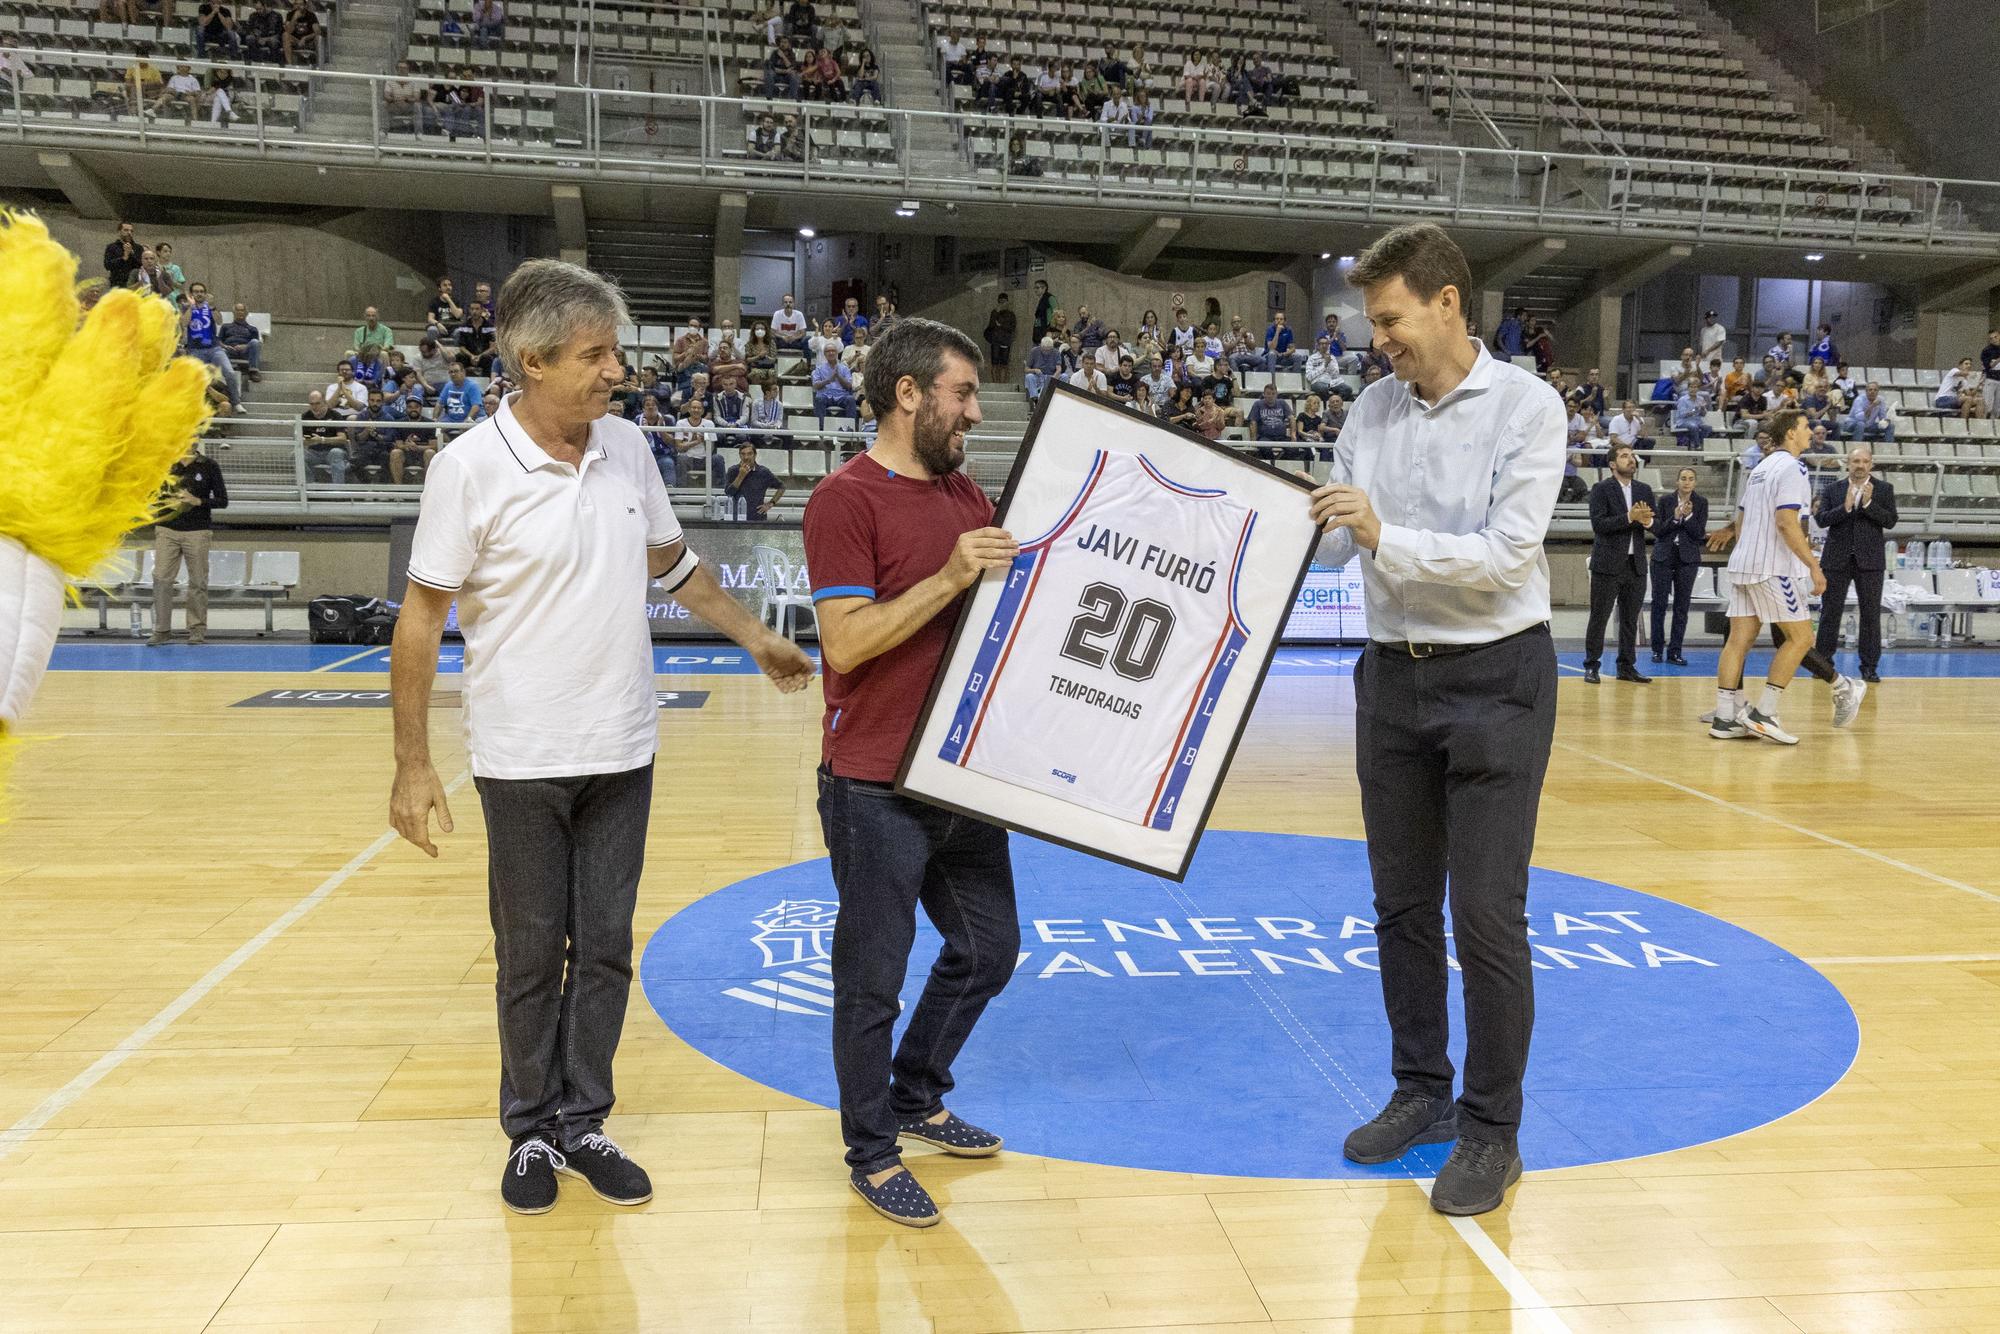 El HLA Alicante rinde homenaje a  Llompart con una victoria ante el Albacete Basket